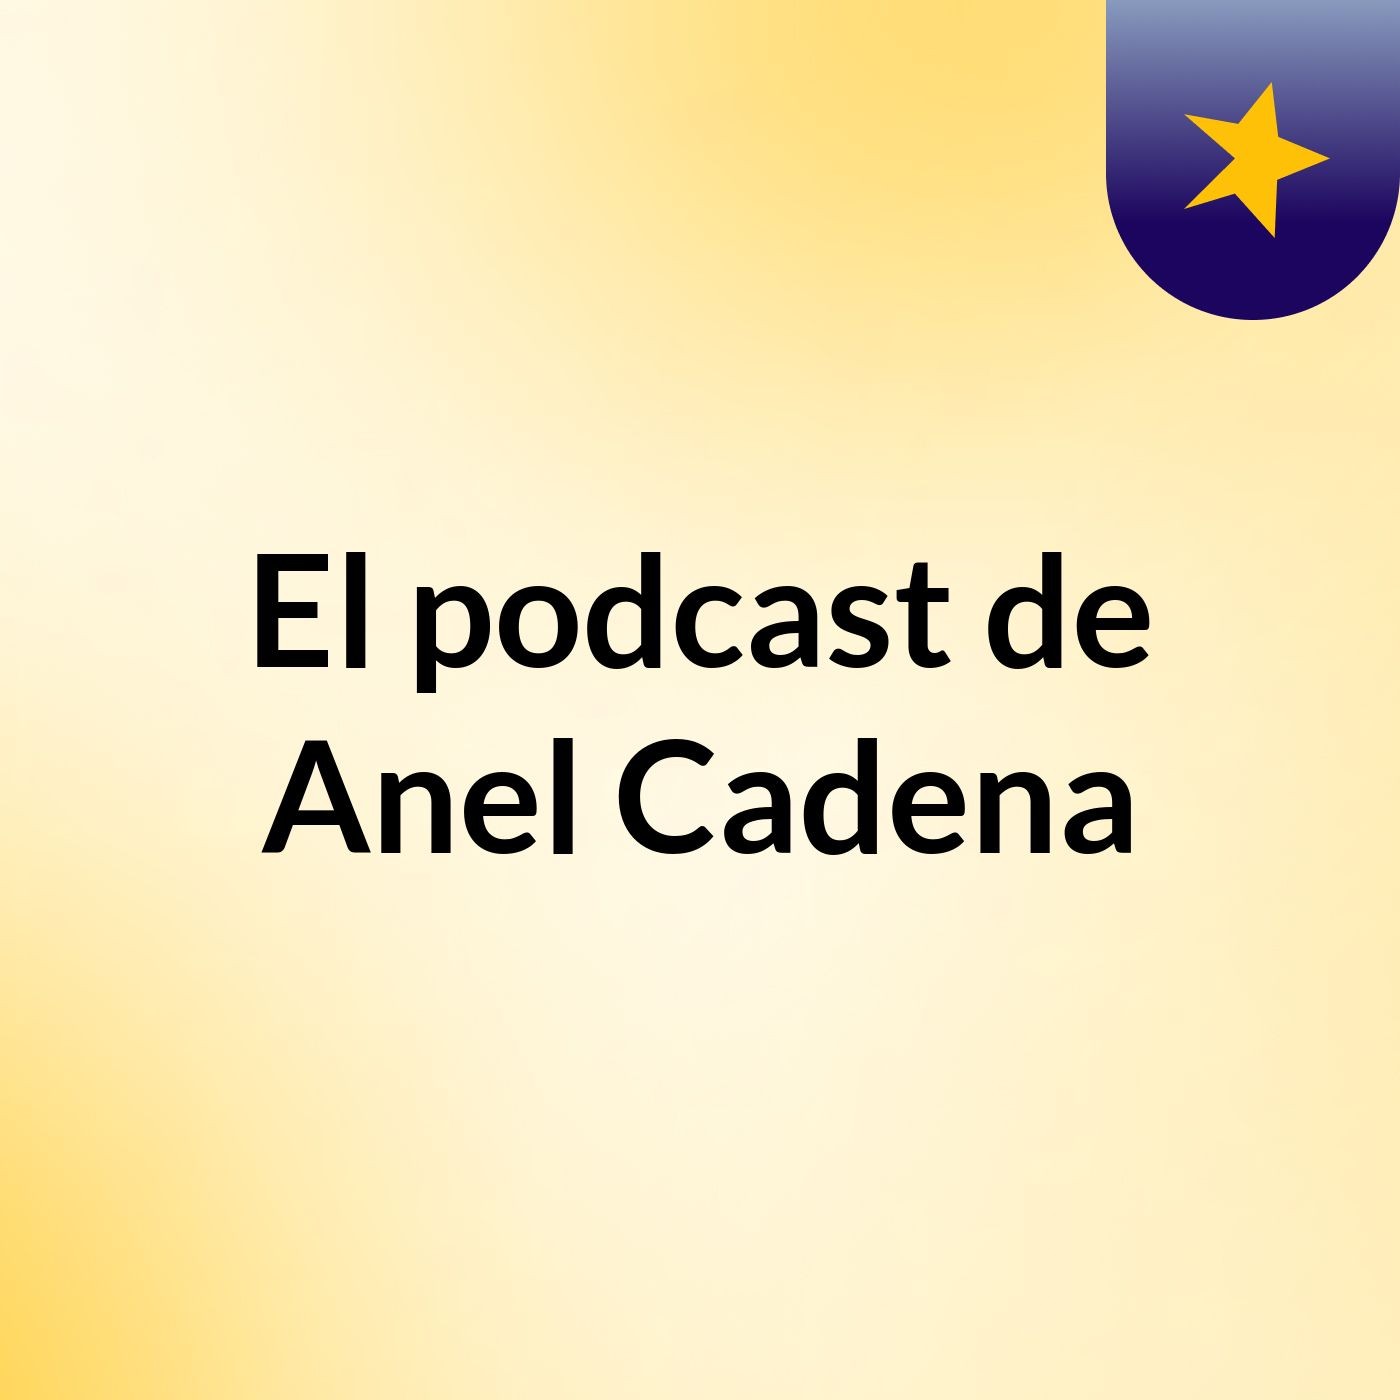 El podcast de Anel Cadena